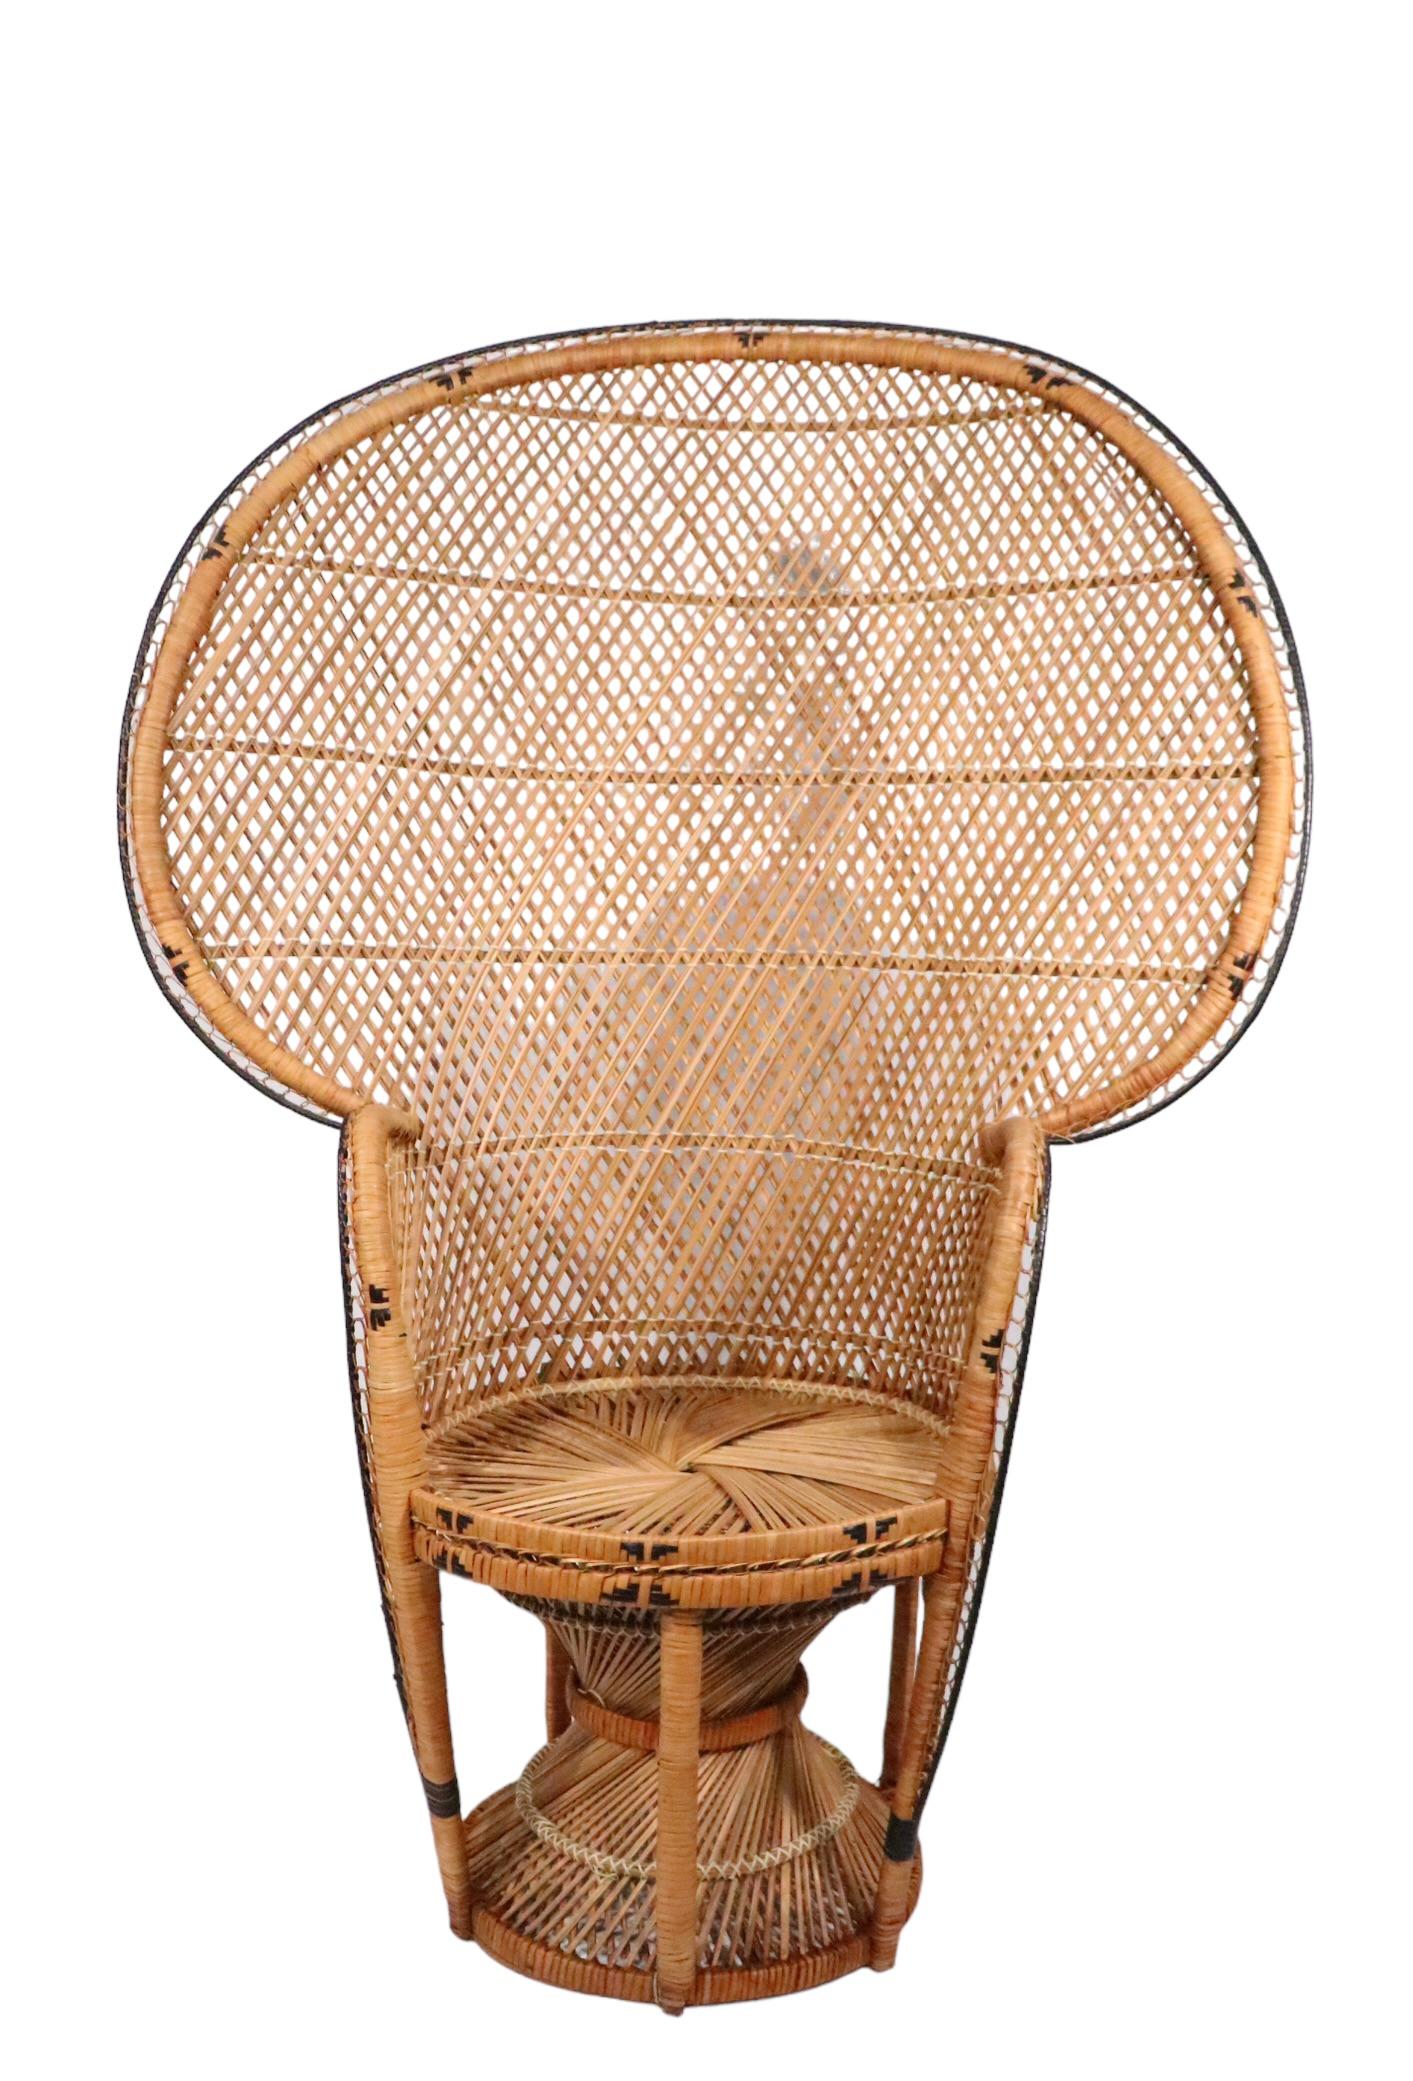 Emmanuelle  Peacock Bamboo Wicker Fan Chair c. 1960/1970's For Sale 6